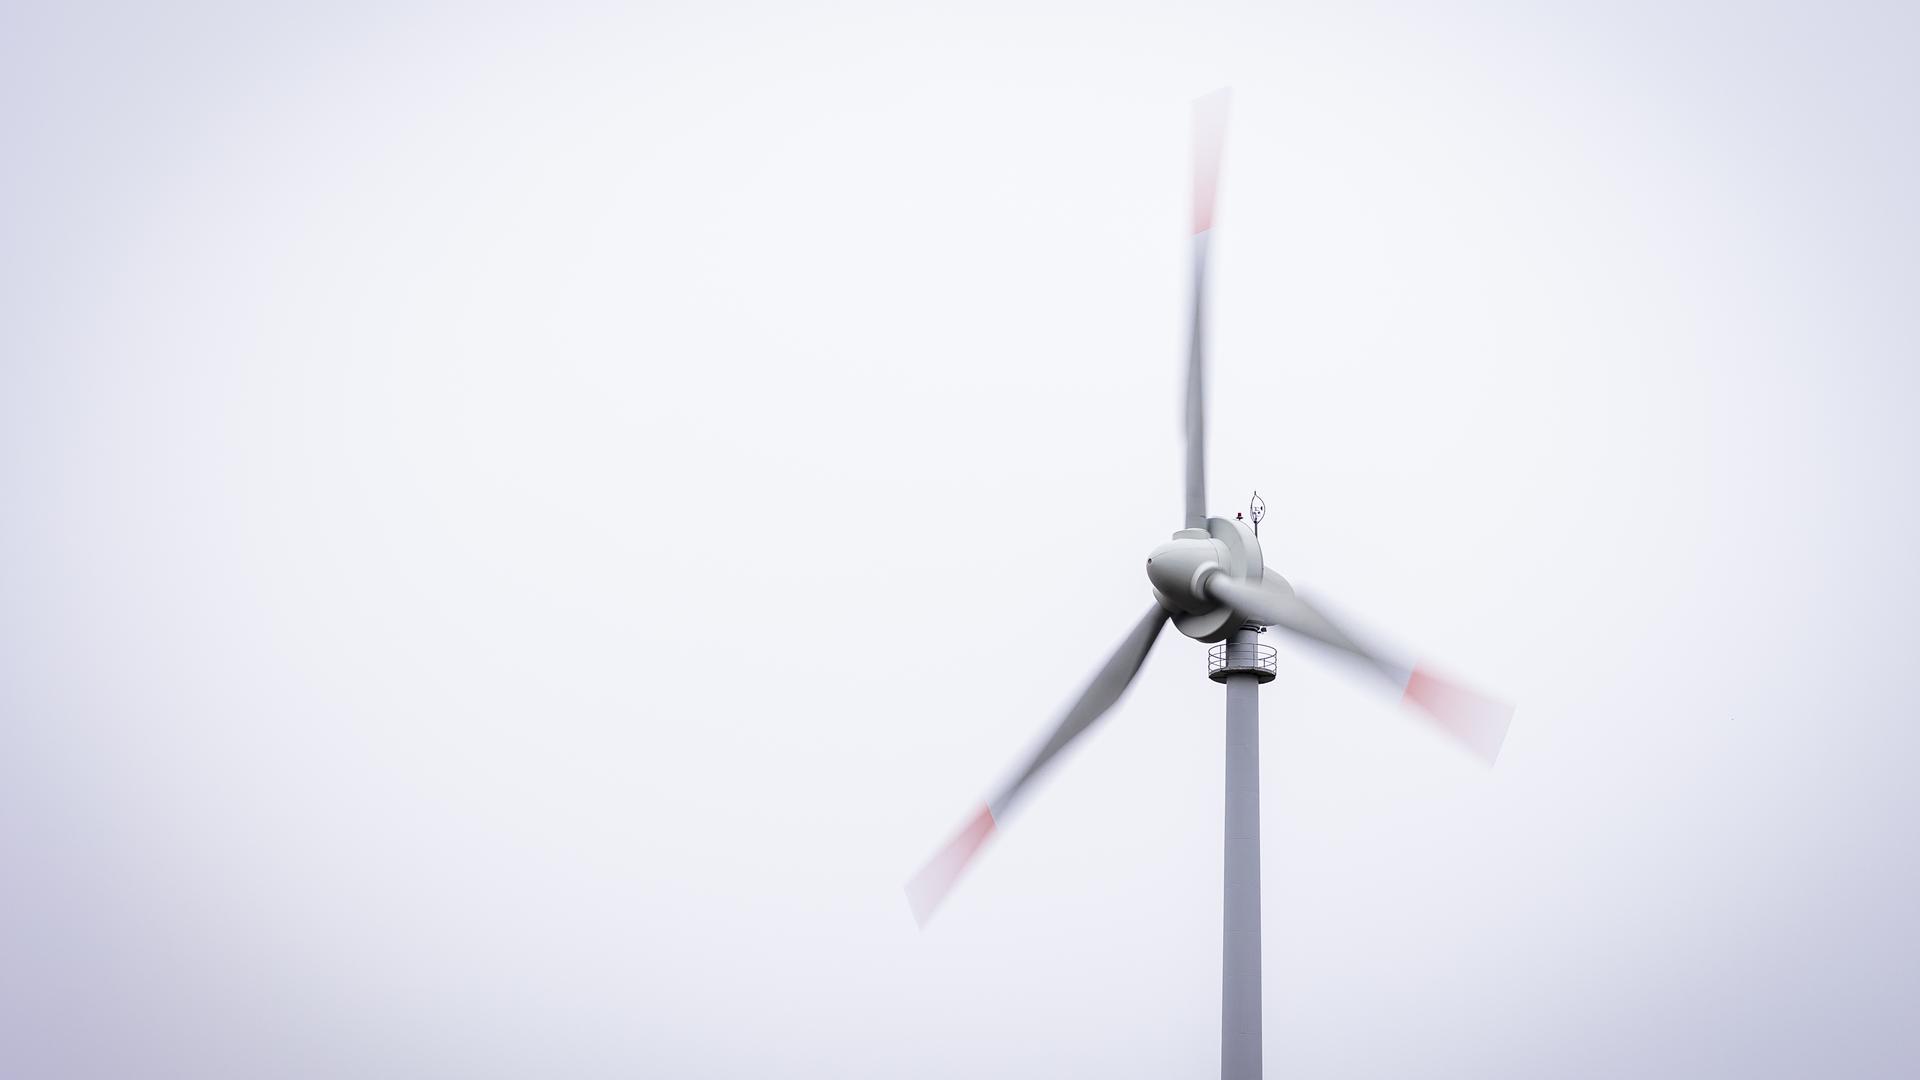 Das Thema Windkraftanlagen wird in Muggensturm derzeit kontrovers diskutiert. Die Gemeinde lädt am 22. Mai zu einer Podiumsdiskussion ein.  Foto: Moritz Frankenberg/dpa